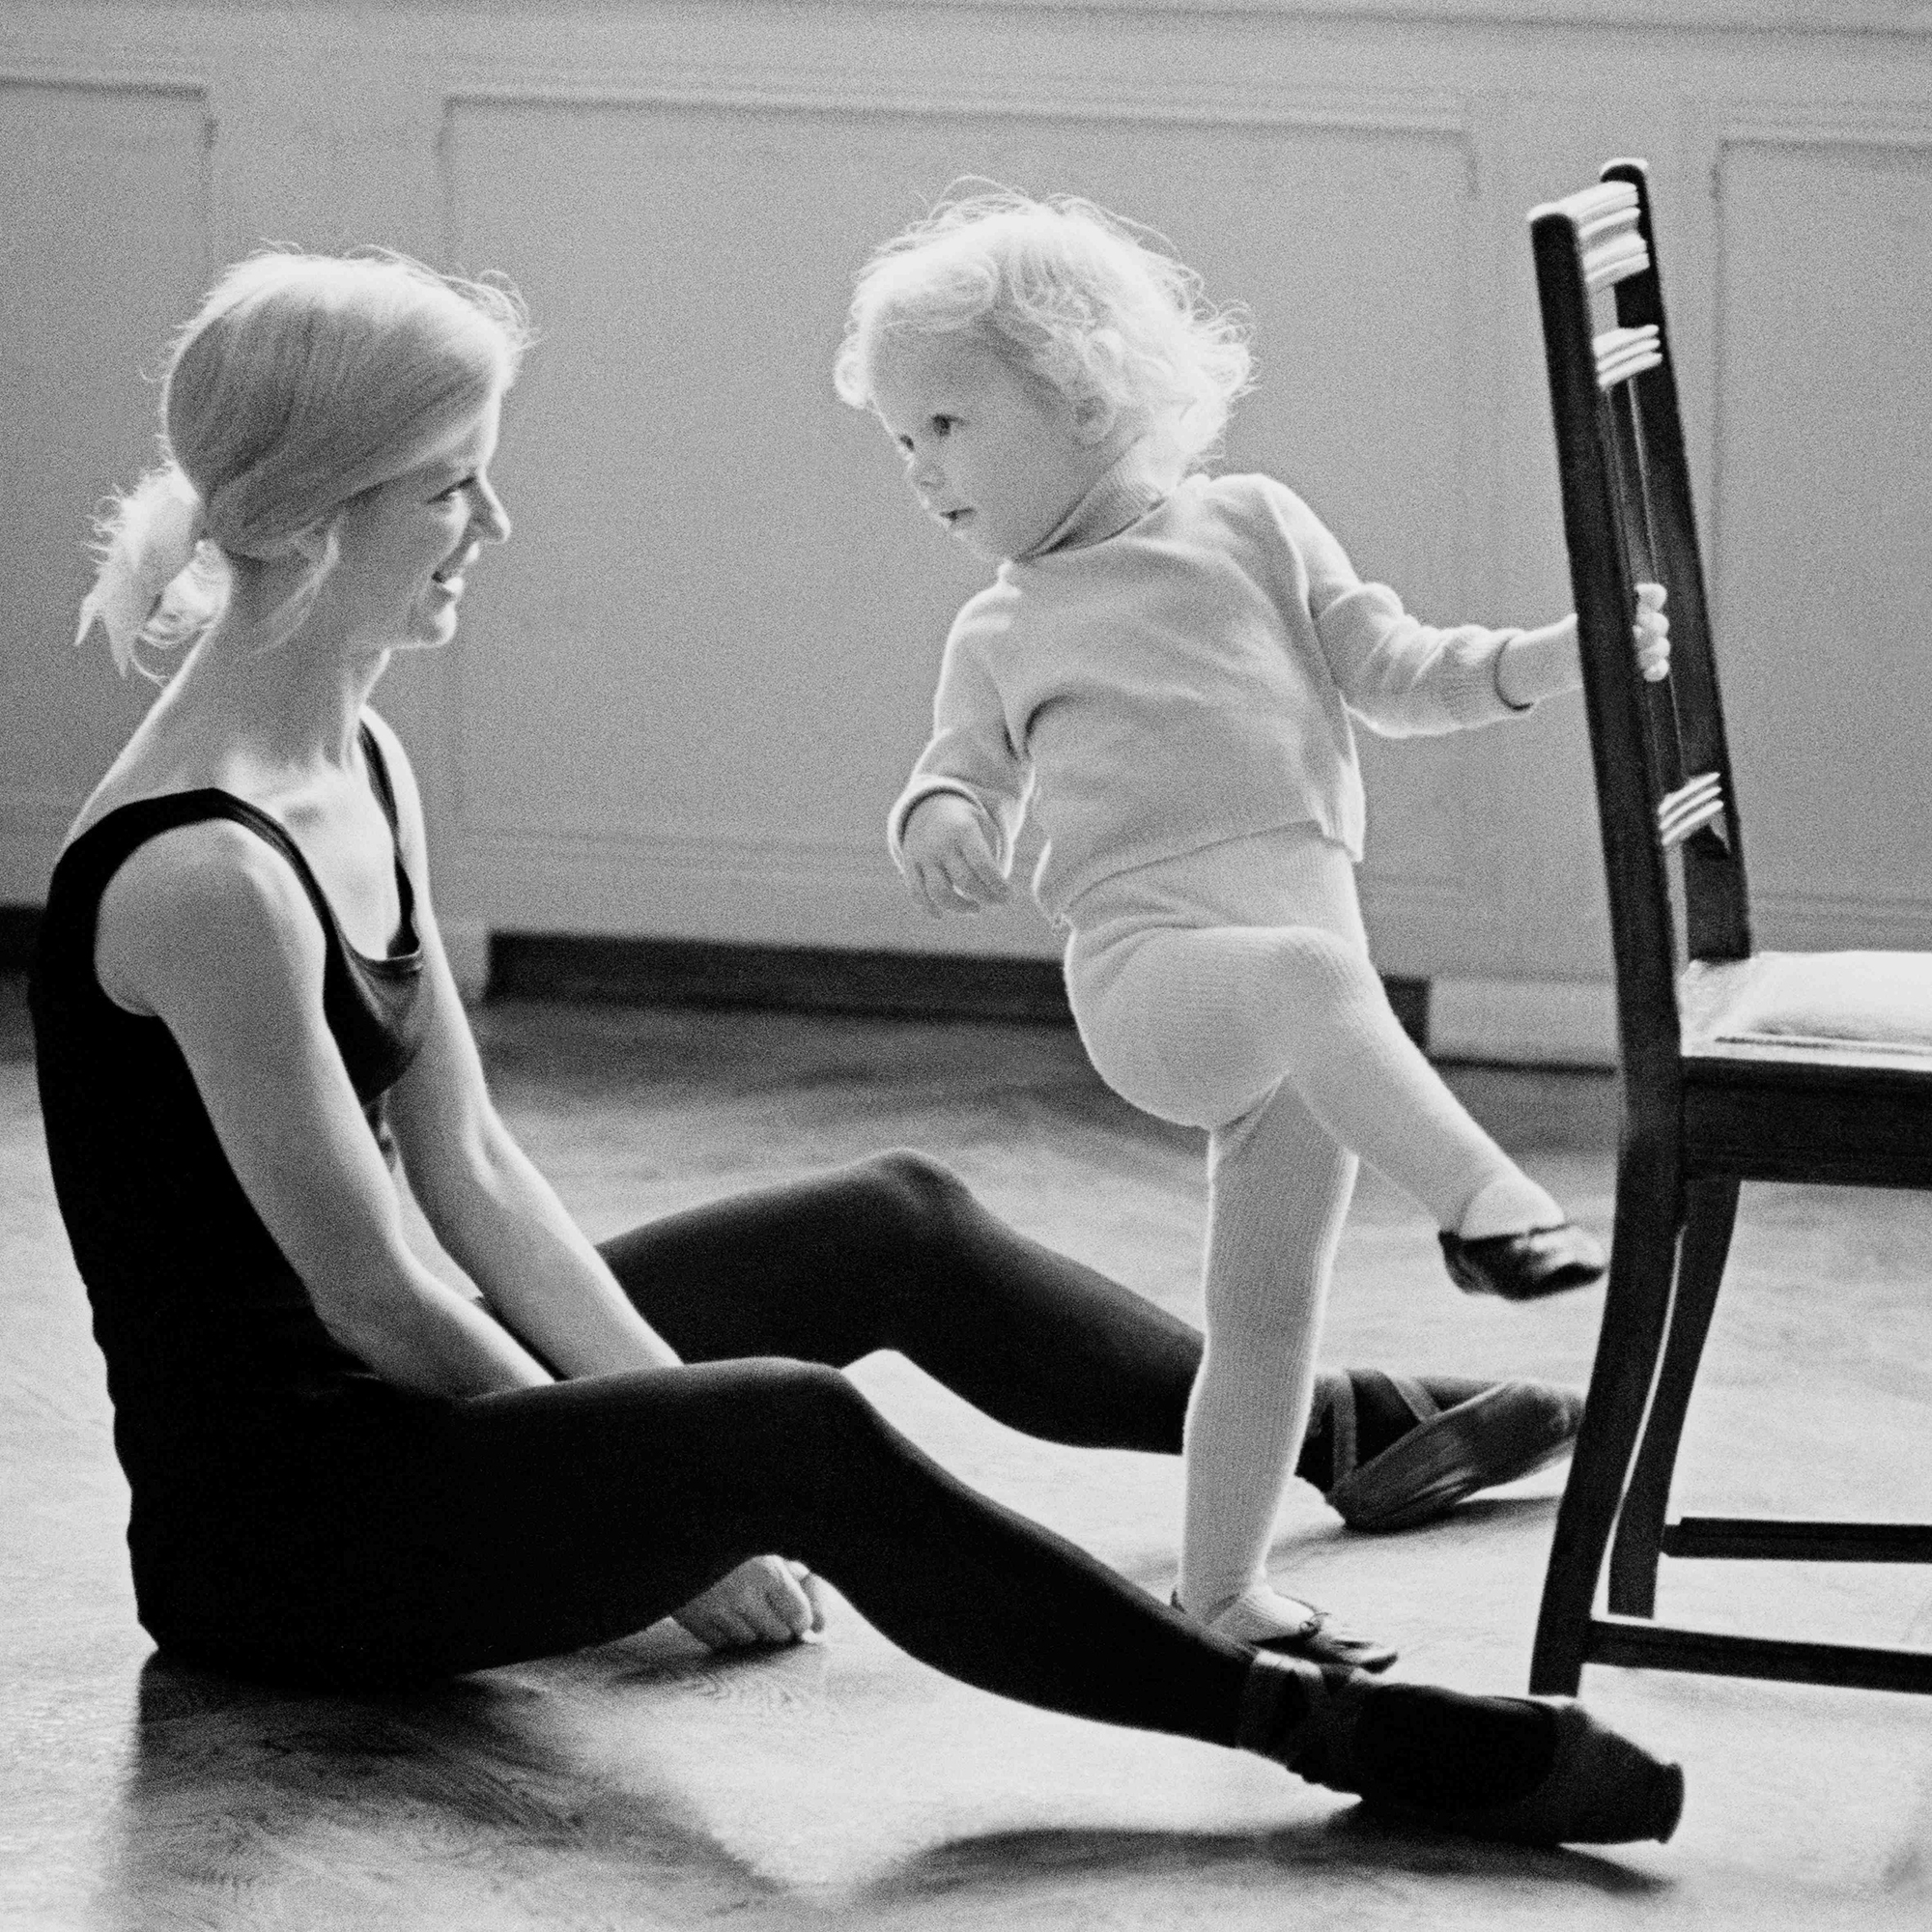 Јуриј Абрамочкин е еден од 15 руски фотографи кои се вклучени во книгата „Современи фотографи“ во издание на „Сент Џејмс прес“. Меѓу неговите награди се и Златно око на организацијата „Ворлд прес фото“. / Раѓање на балерина, 1966